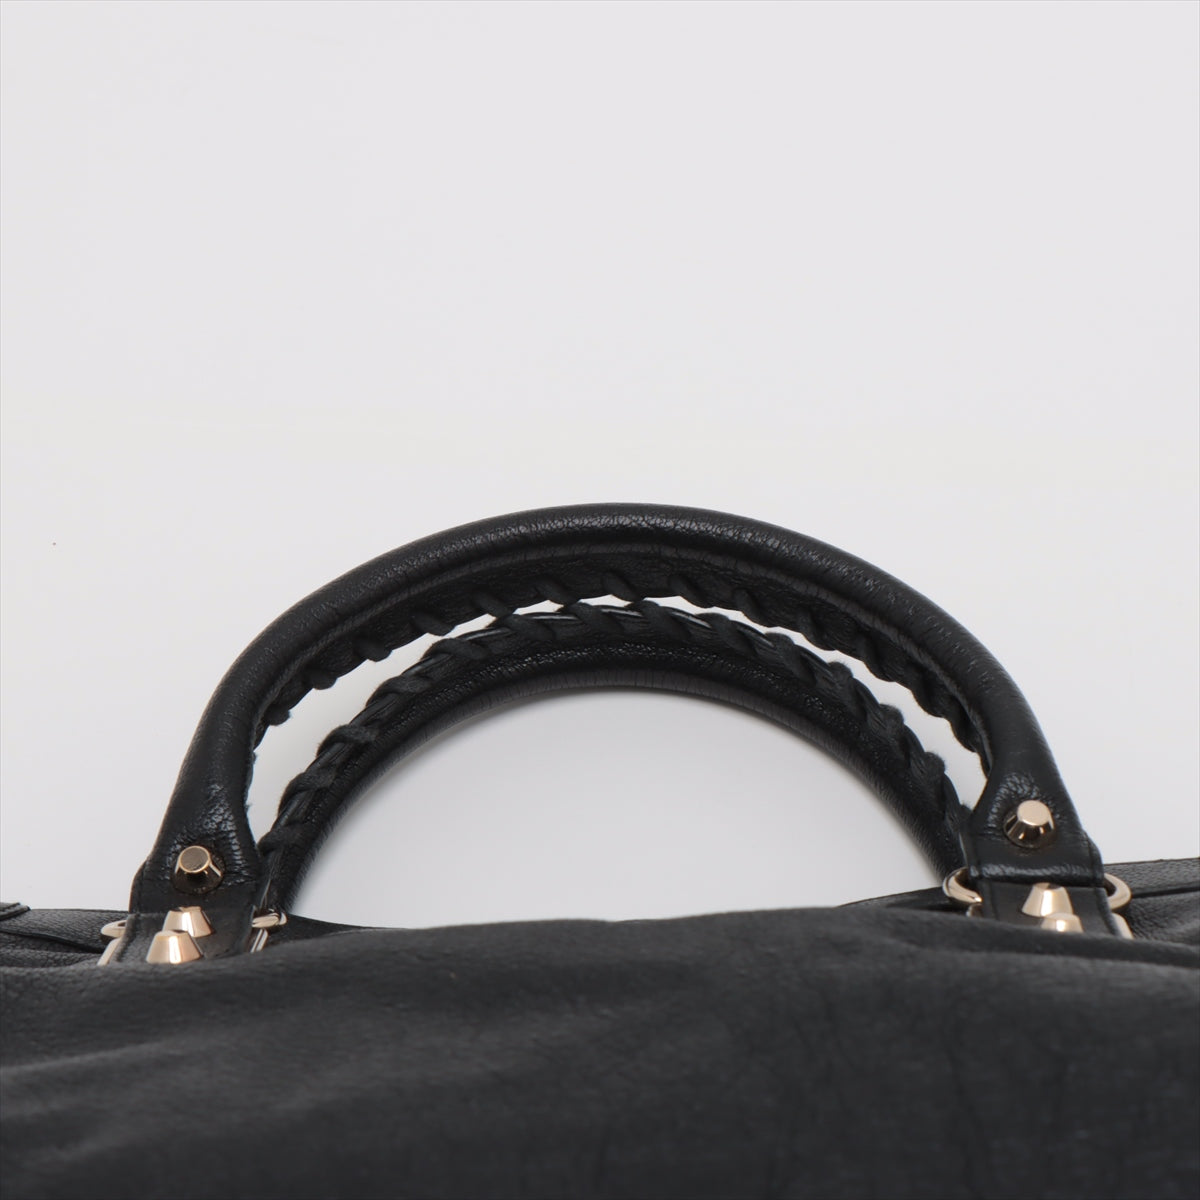 Balenciaga The City Leather Handbag Black 115748